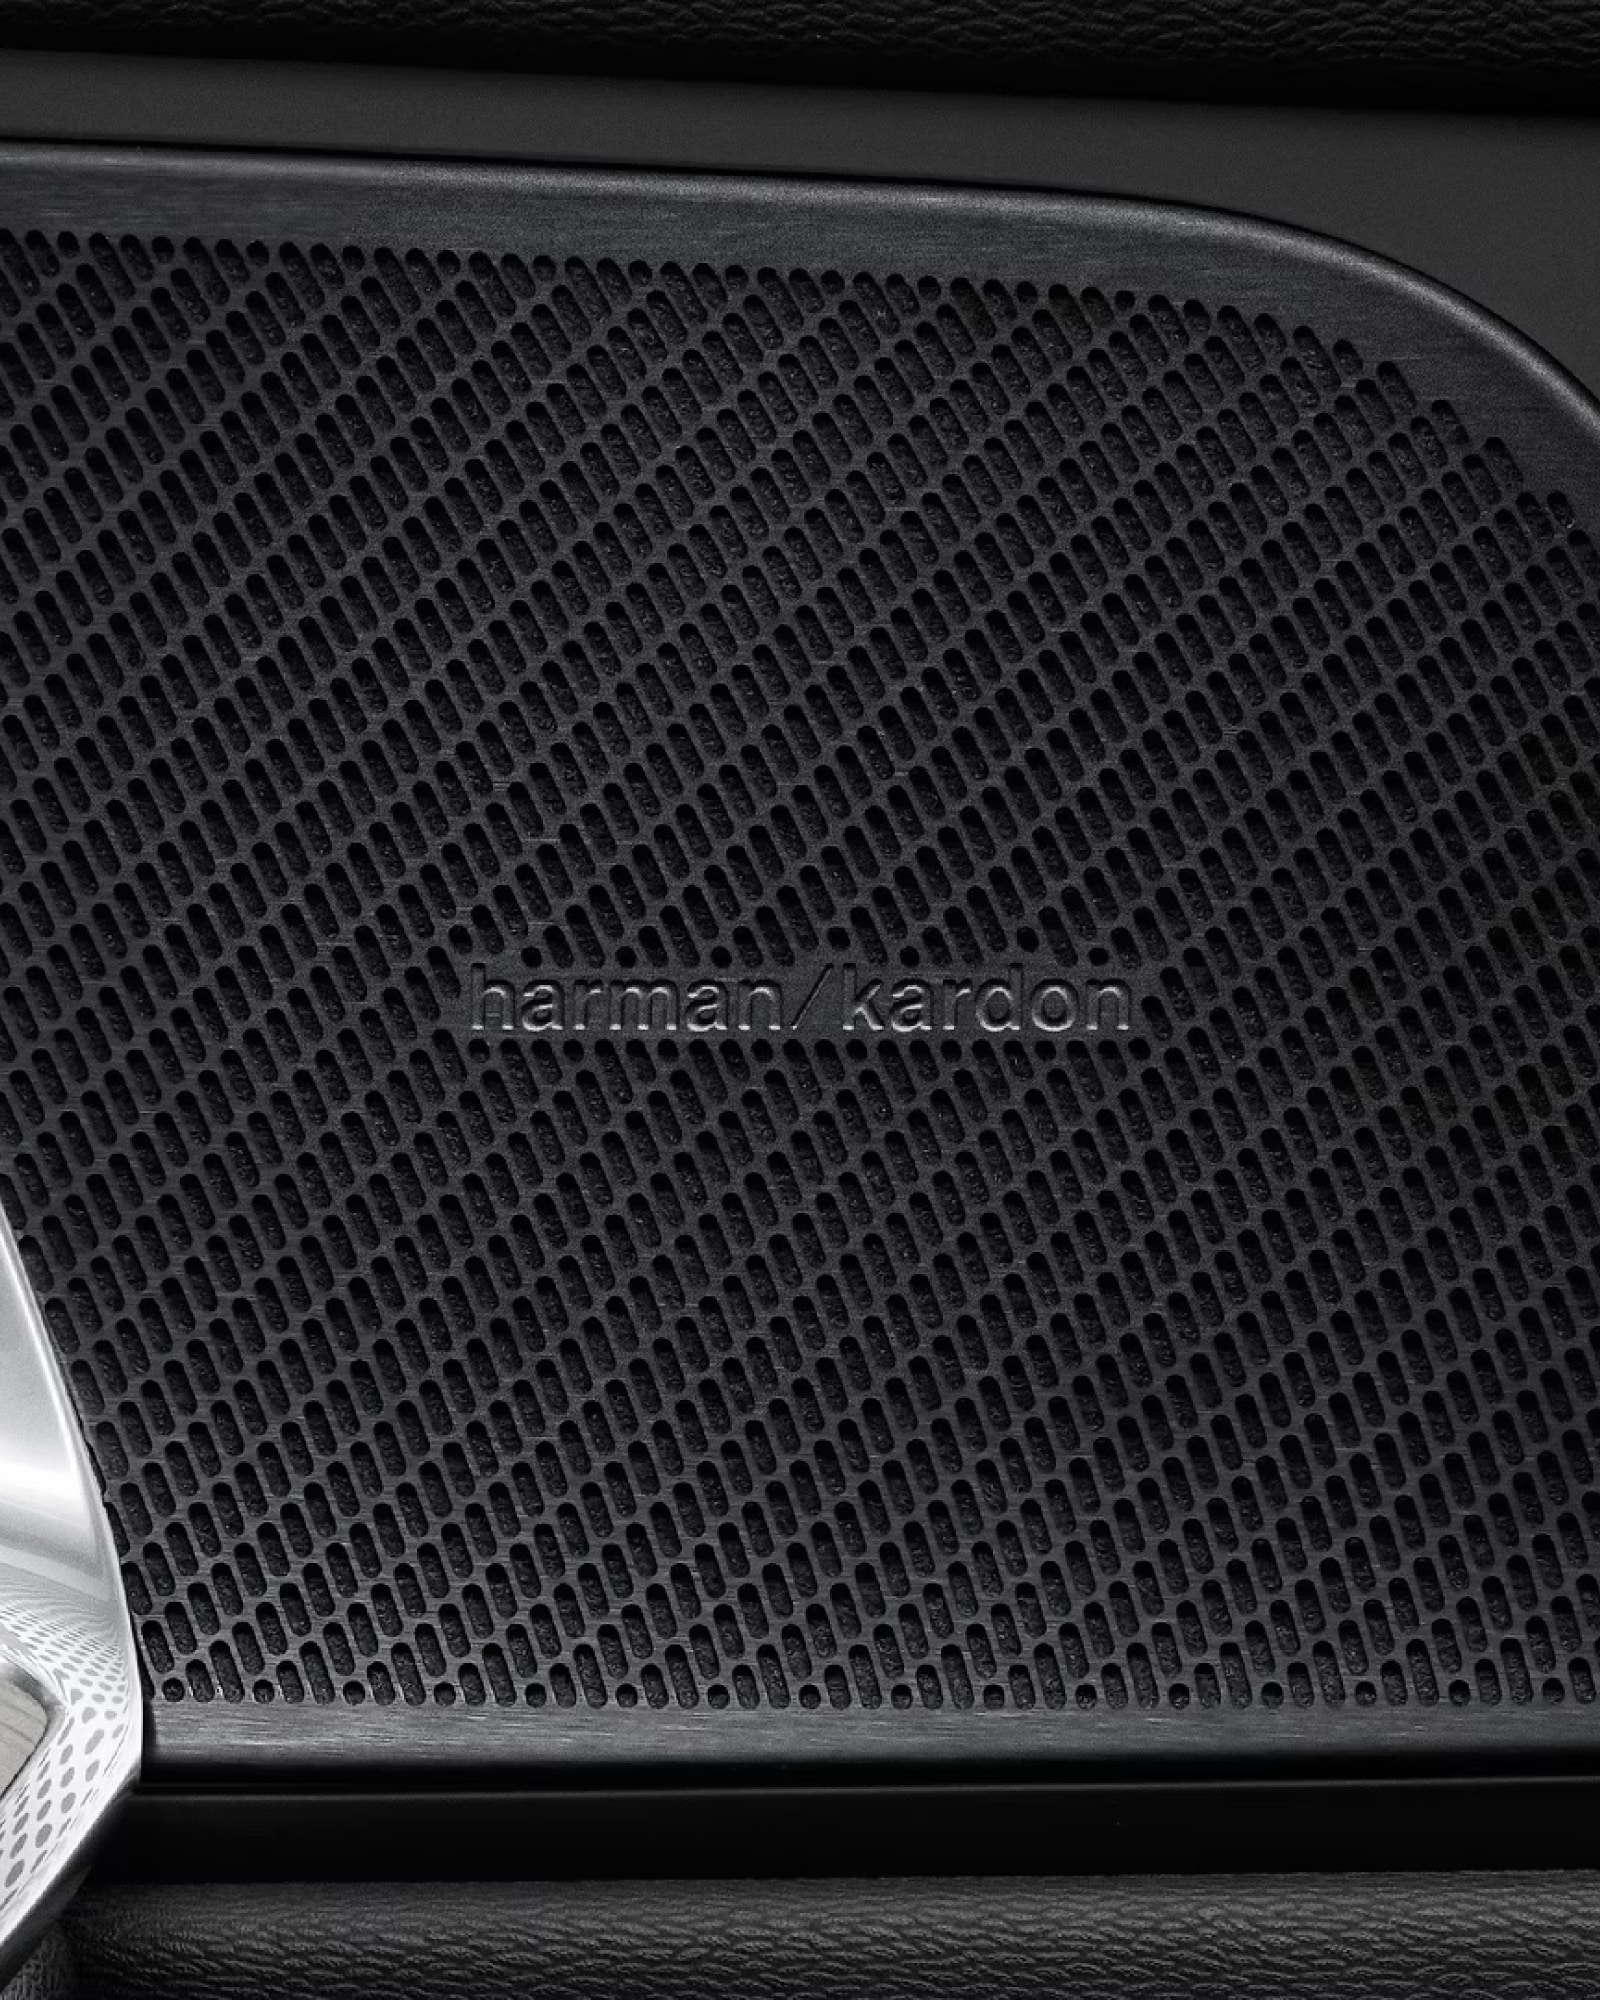 Harman Kardon speakers inside a Volvo V60 plug-in hybrid.